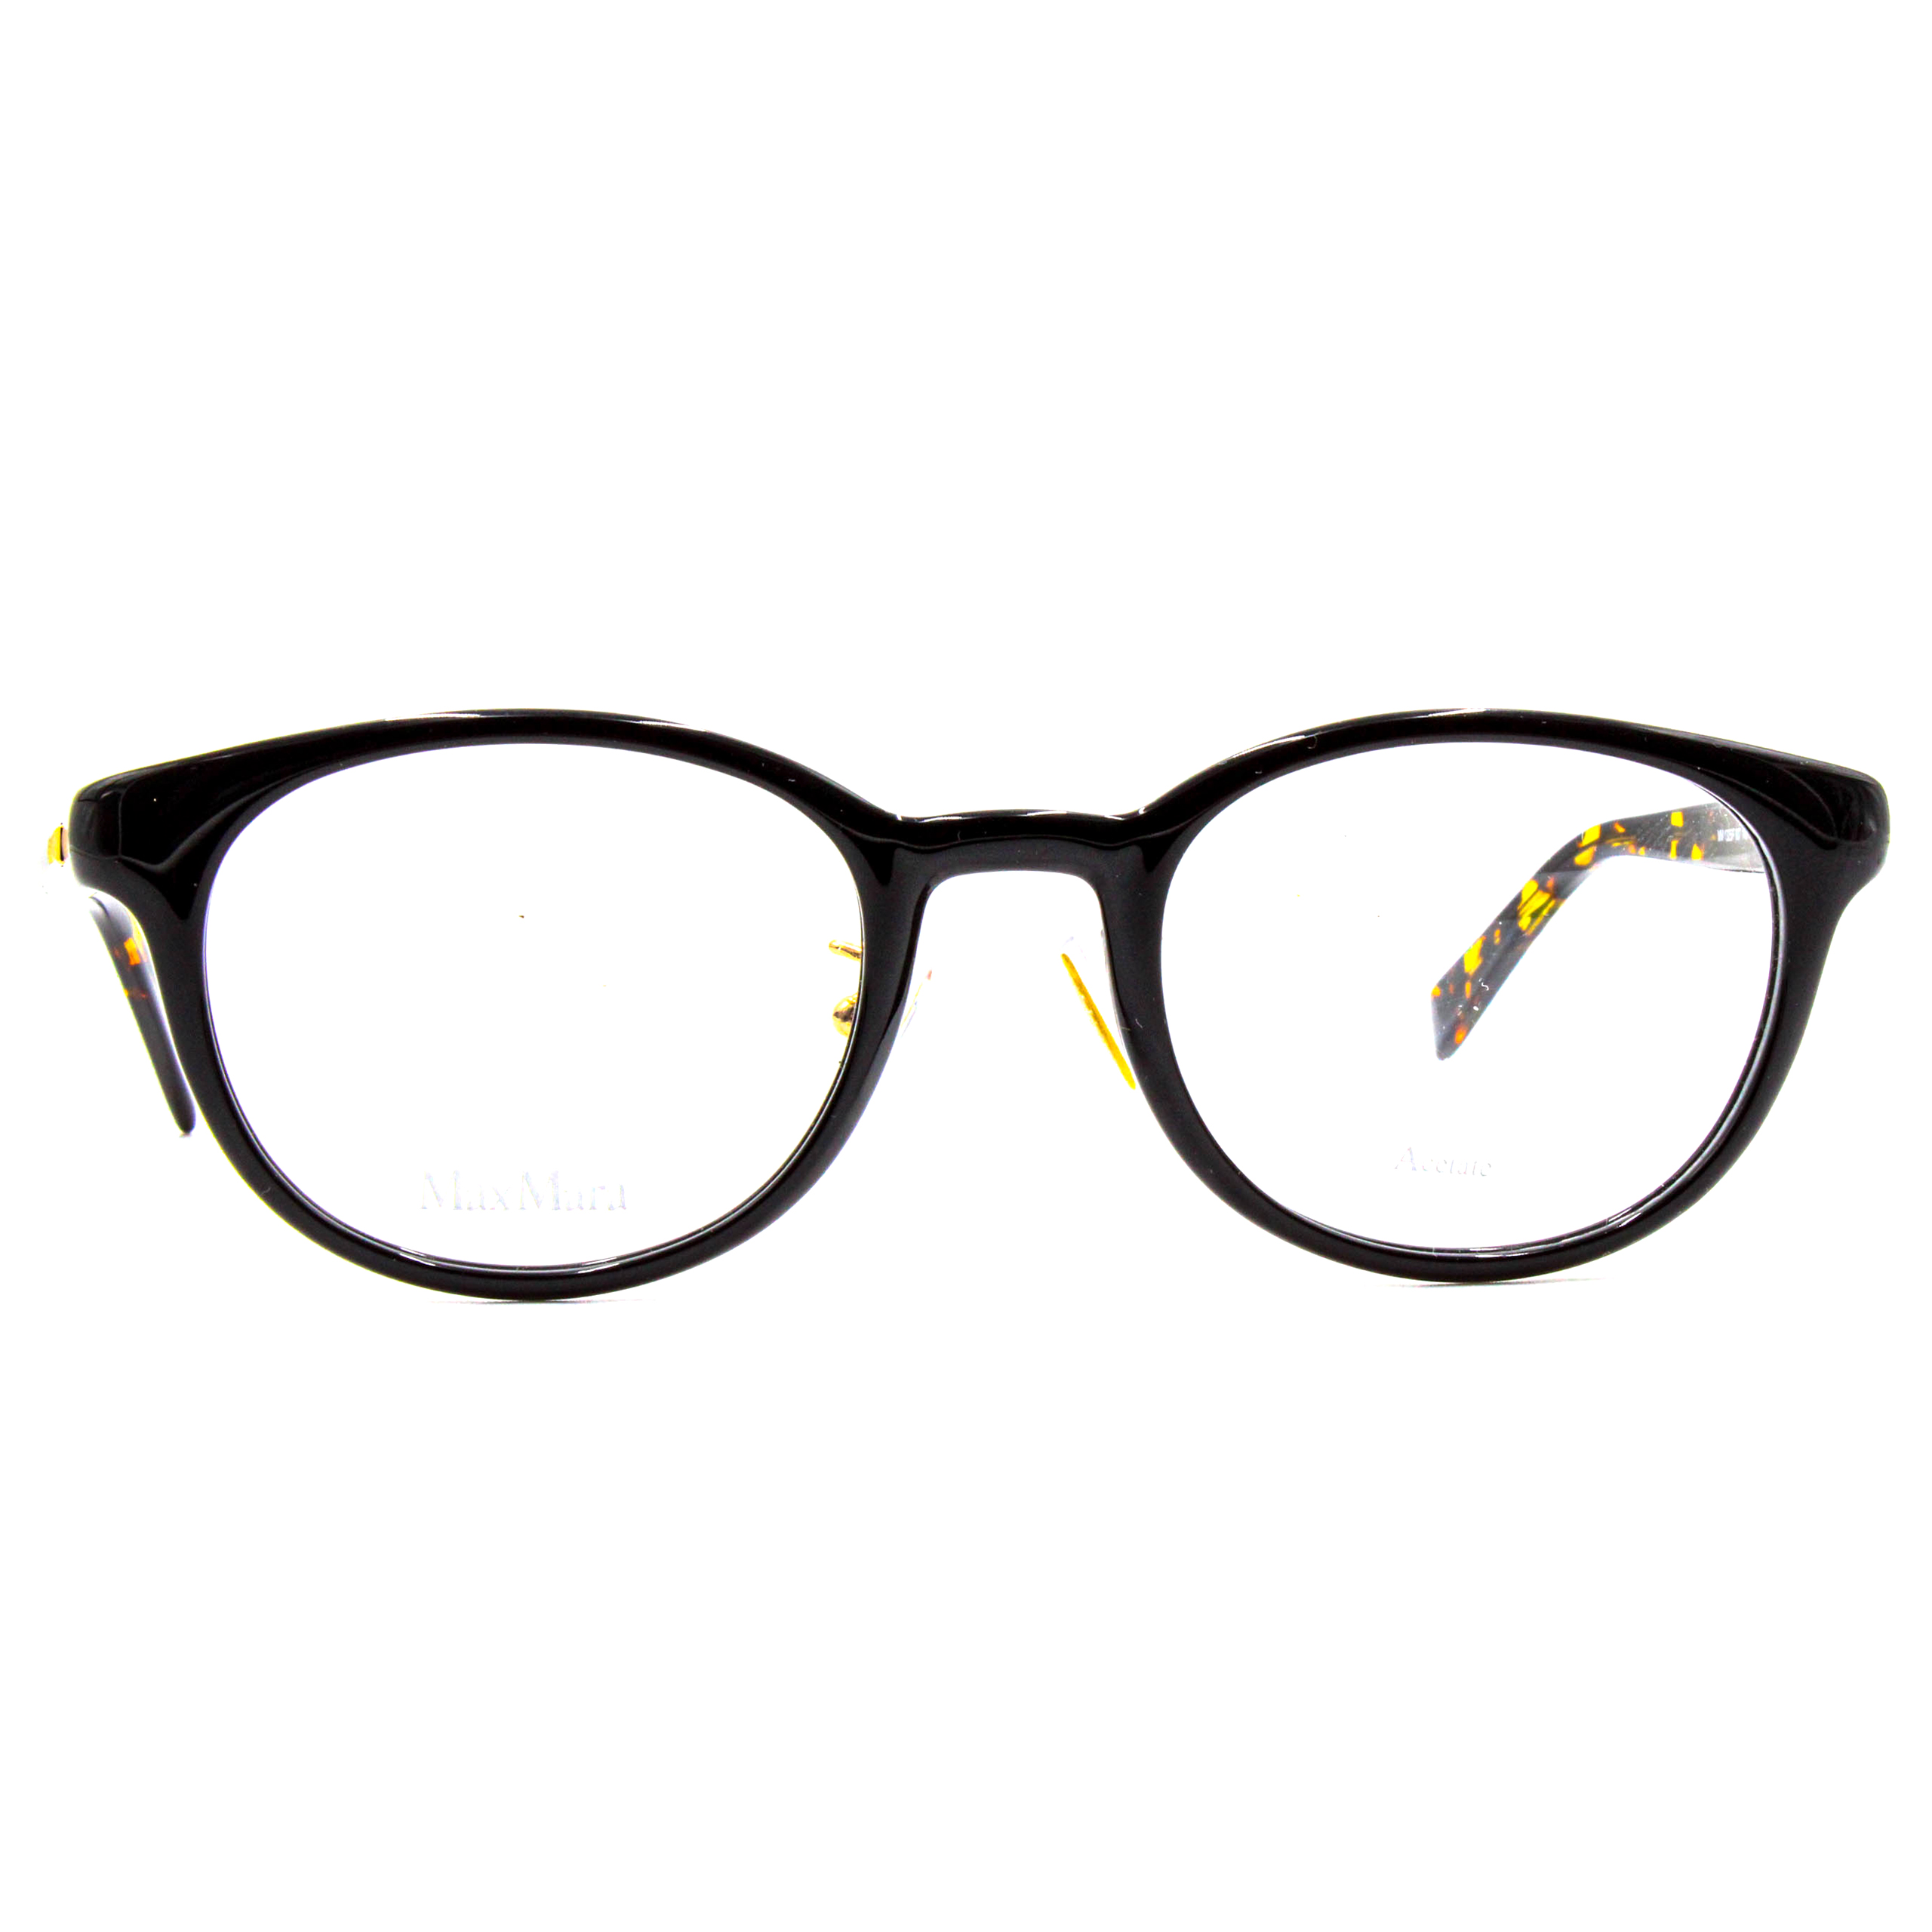 Porte-lunettes de voiture, 165 mm x 55 mm x 35 mm Lunettes de